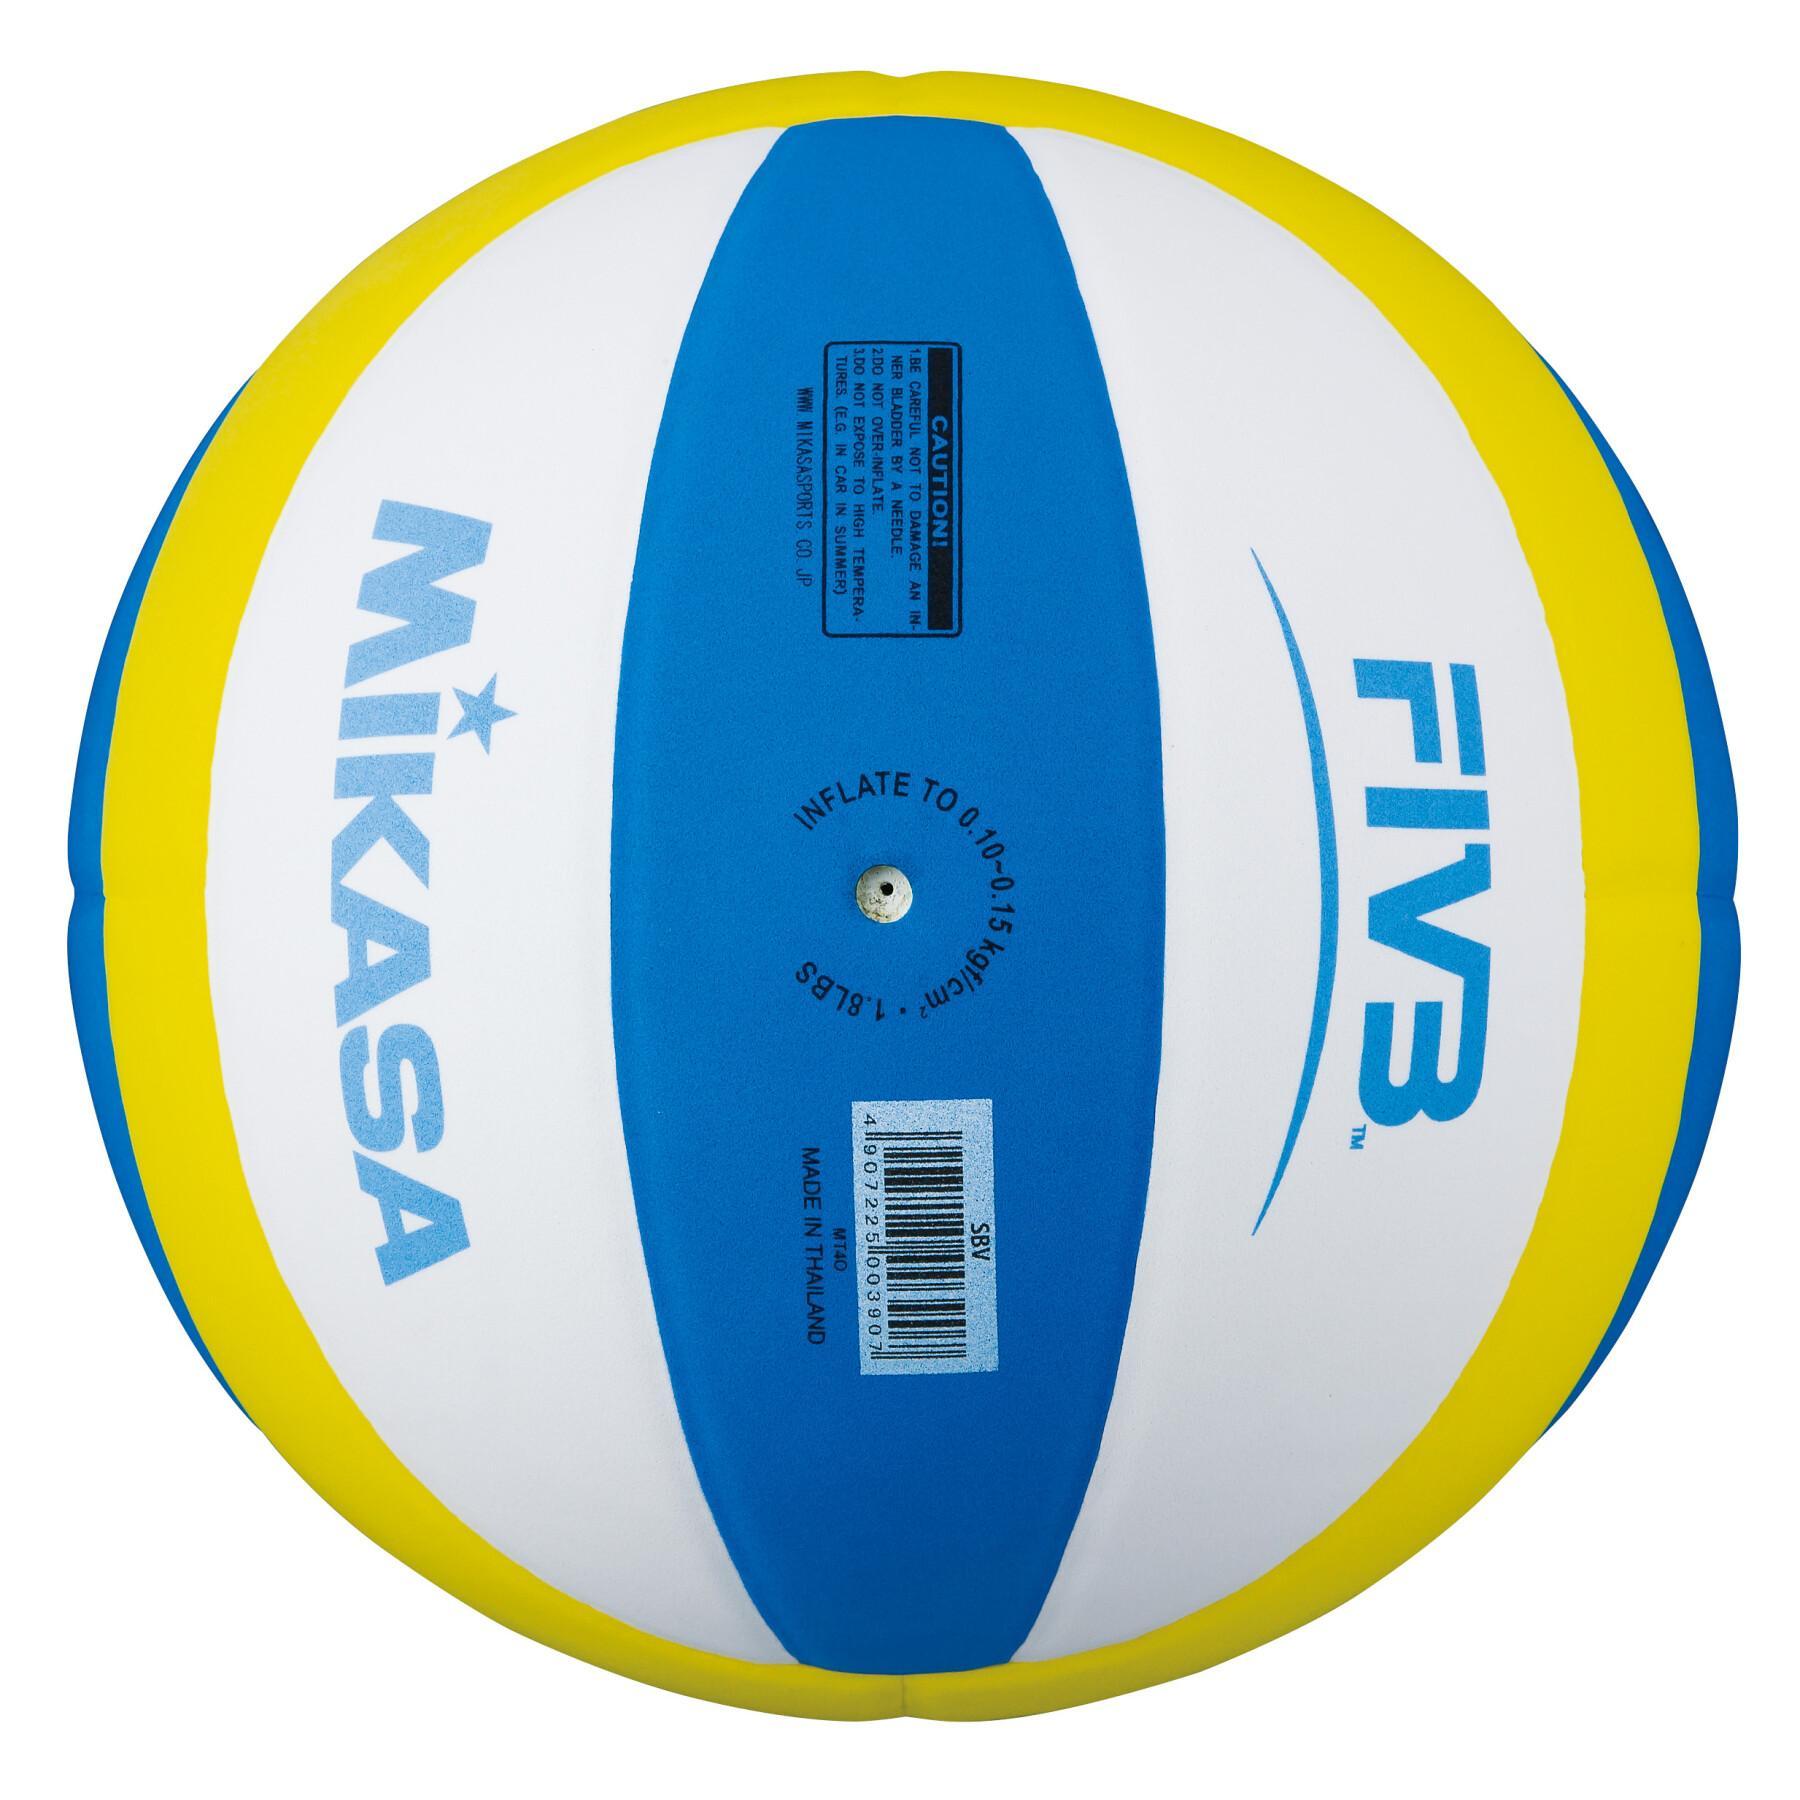 Voleibol de praia para crianças Mikasa SBV